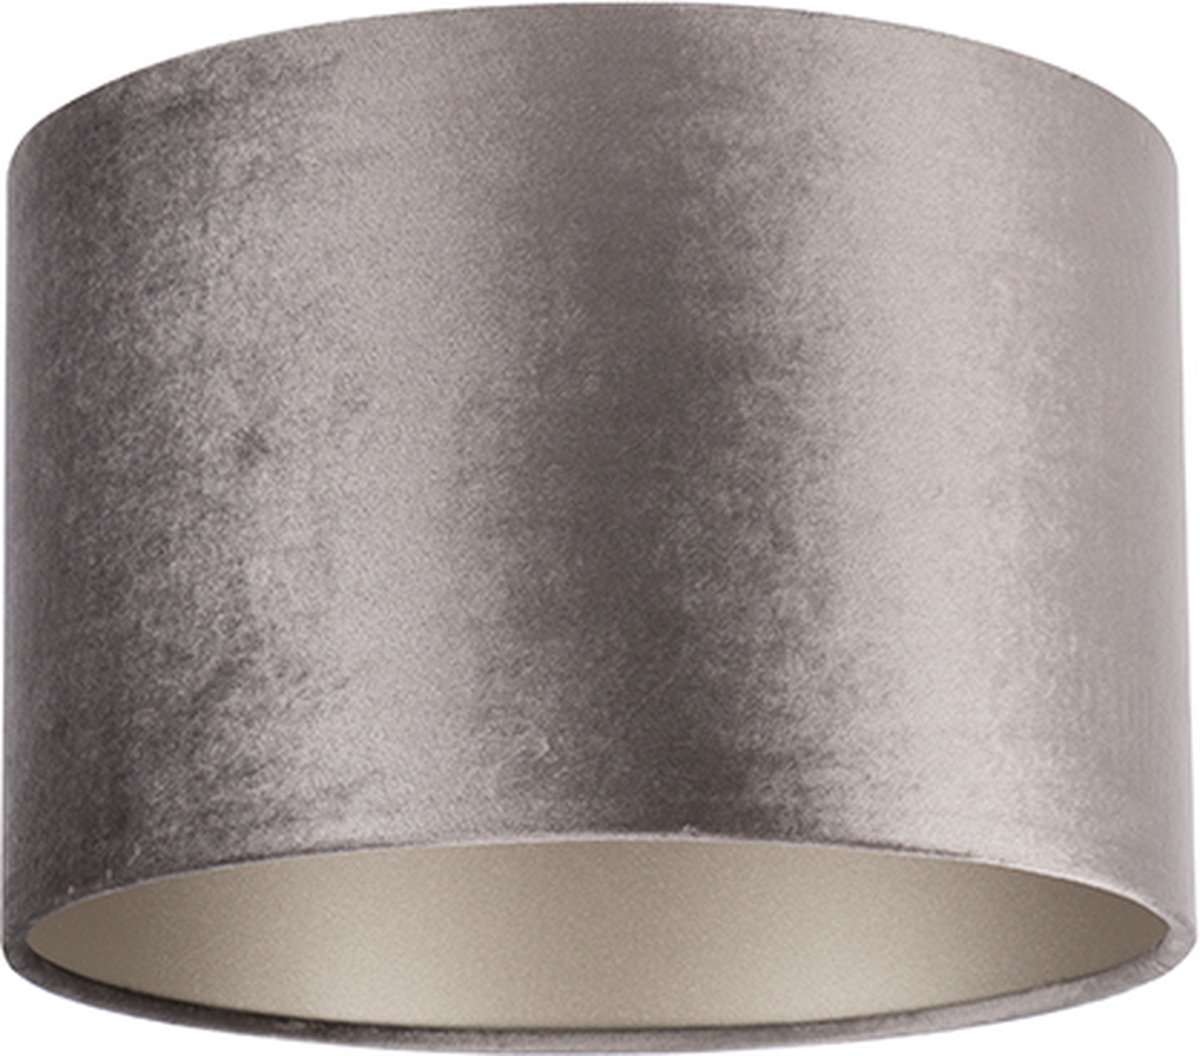 Uniqq Lampenkap velours zilver Ø 30 cm – 20 cm hoog